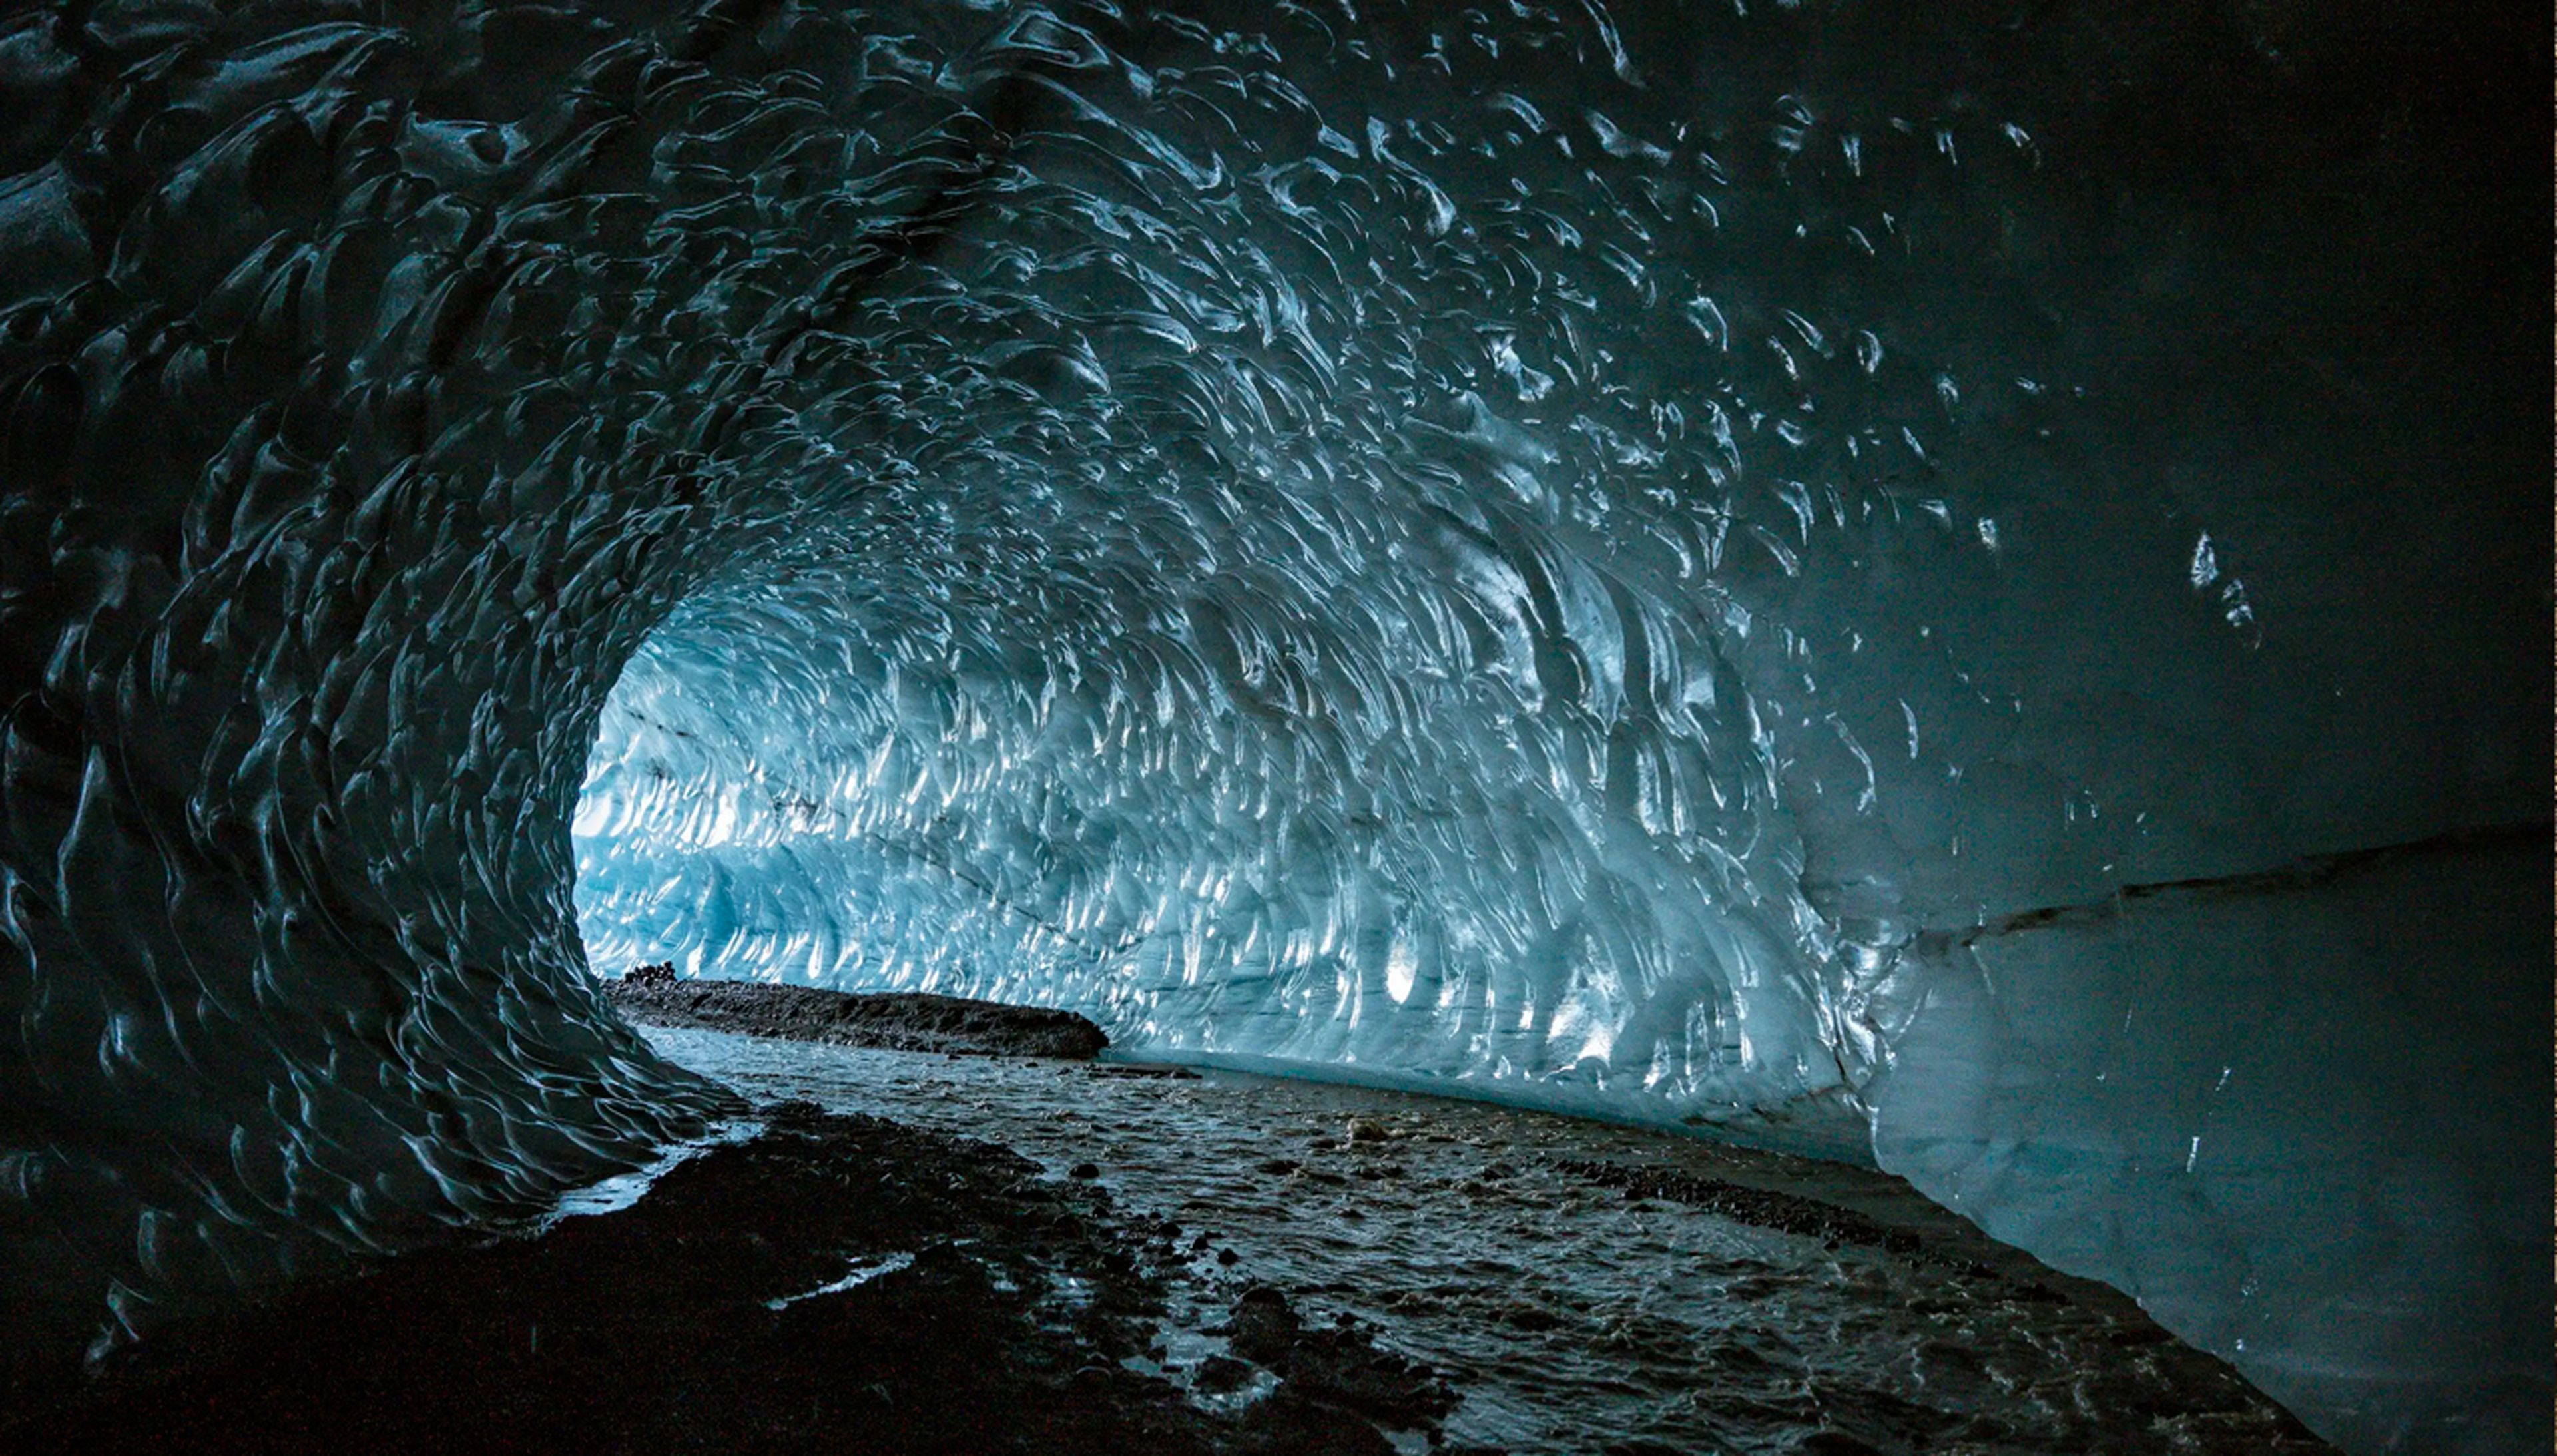 Las paredes de la cueva de hielo.